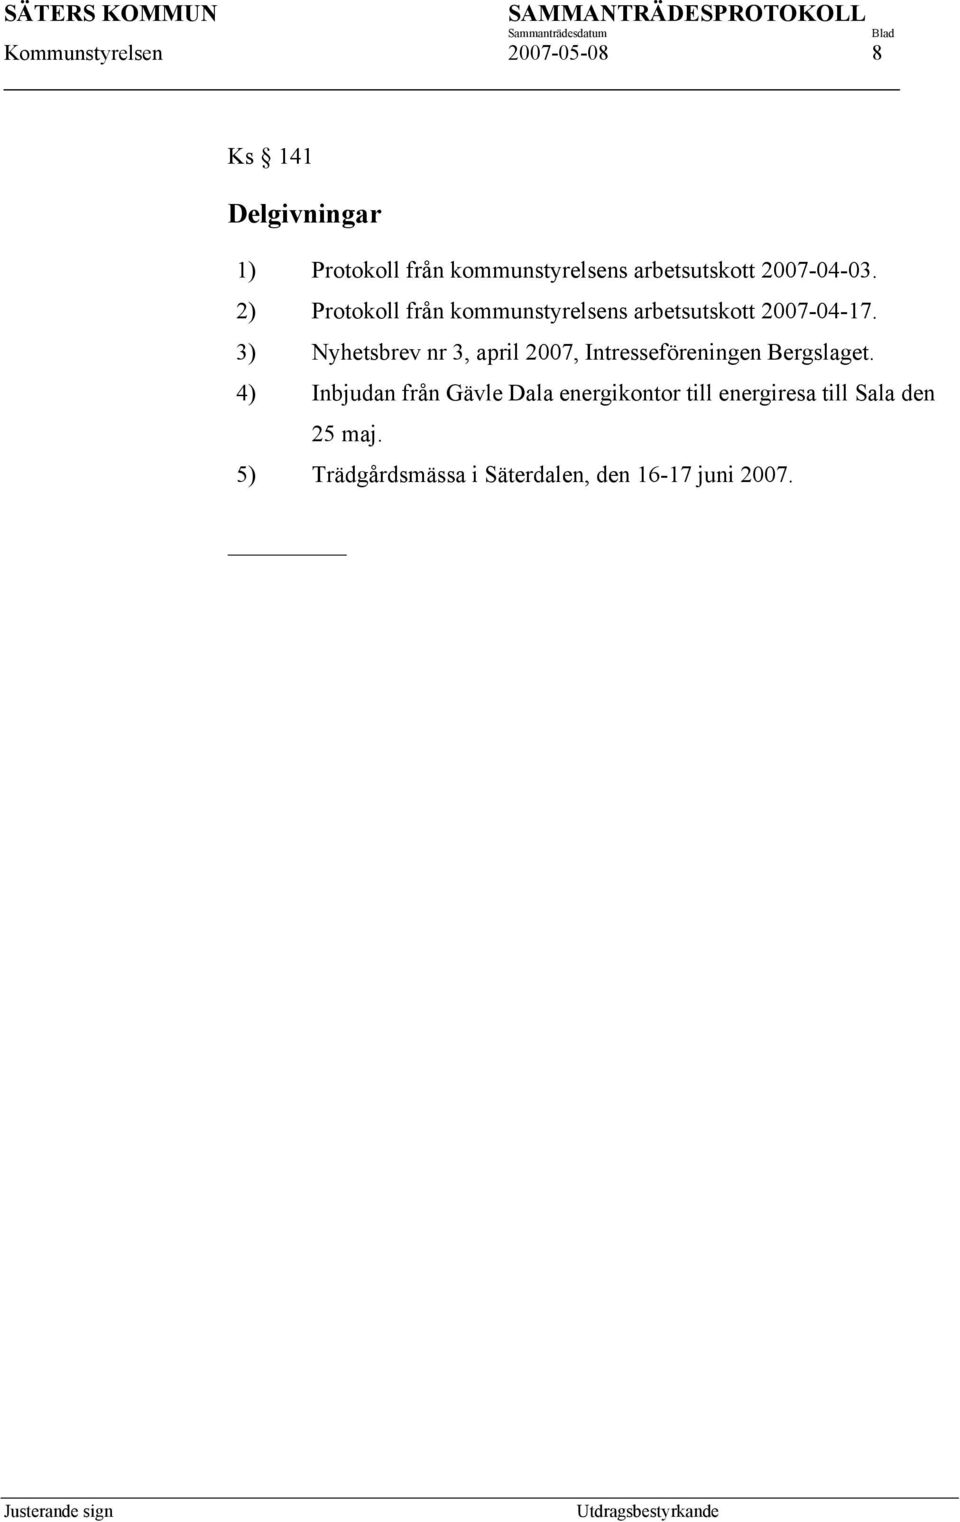 3) Nyhetsbrev nr 3, april 2007, Intresseföreningen Bergslaget.